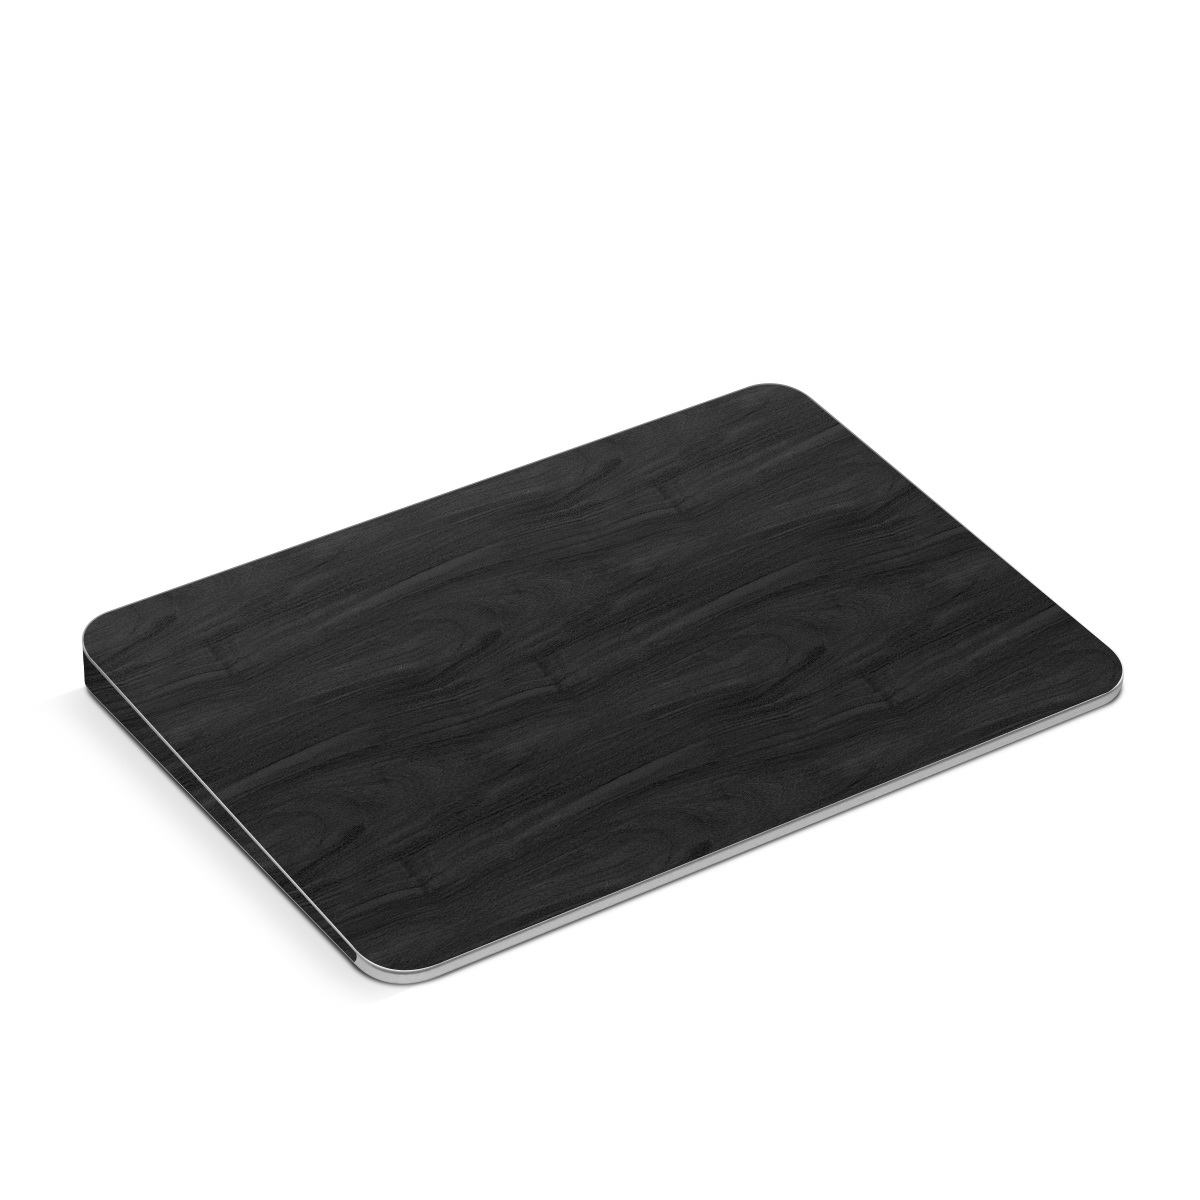 Apple Magic Trackpad Skin design of Black, Brown, Wood, Grey, Flooring, Floor, Laminate flooring, Wood flooring, with black colors